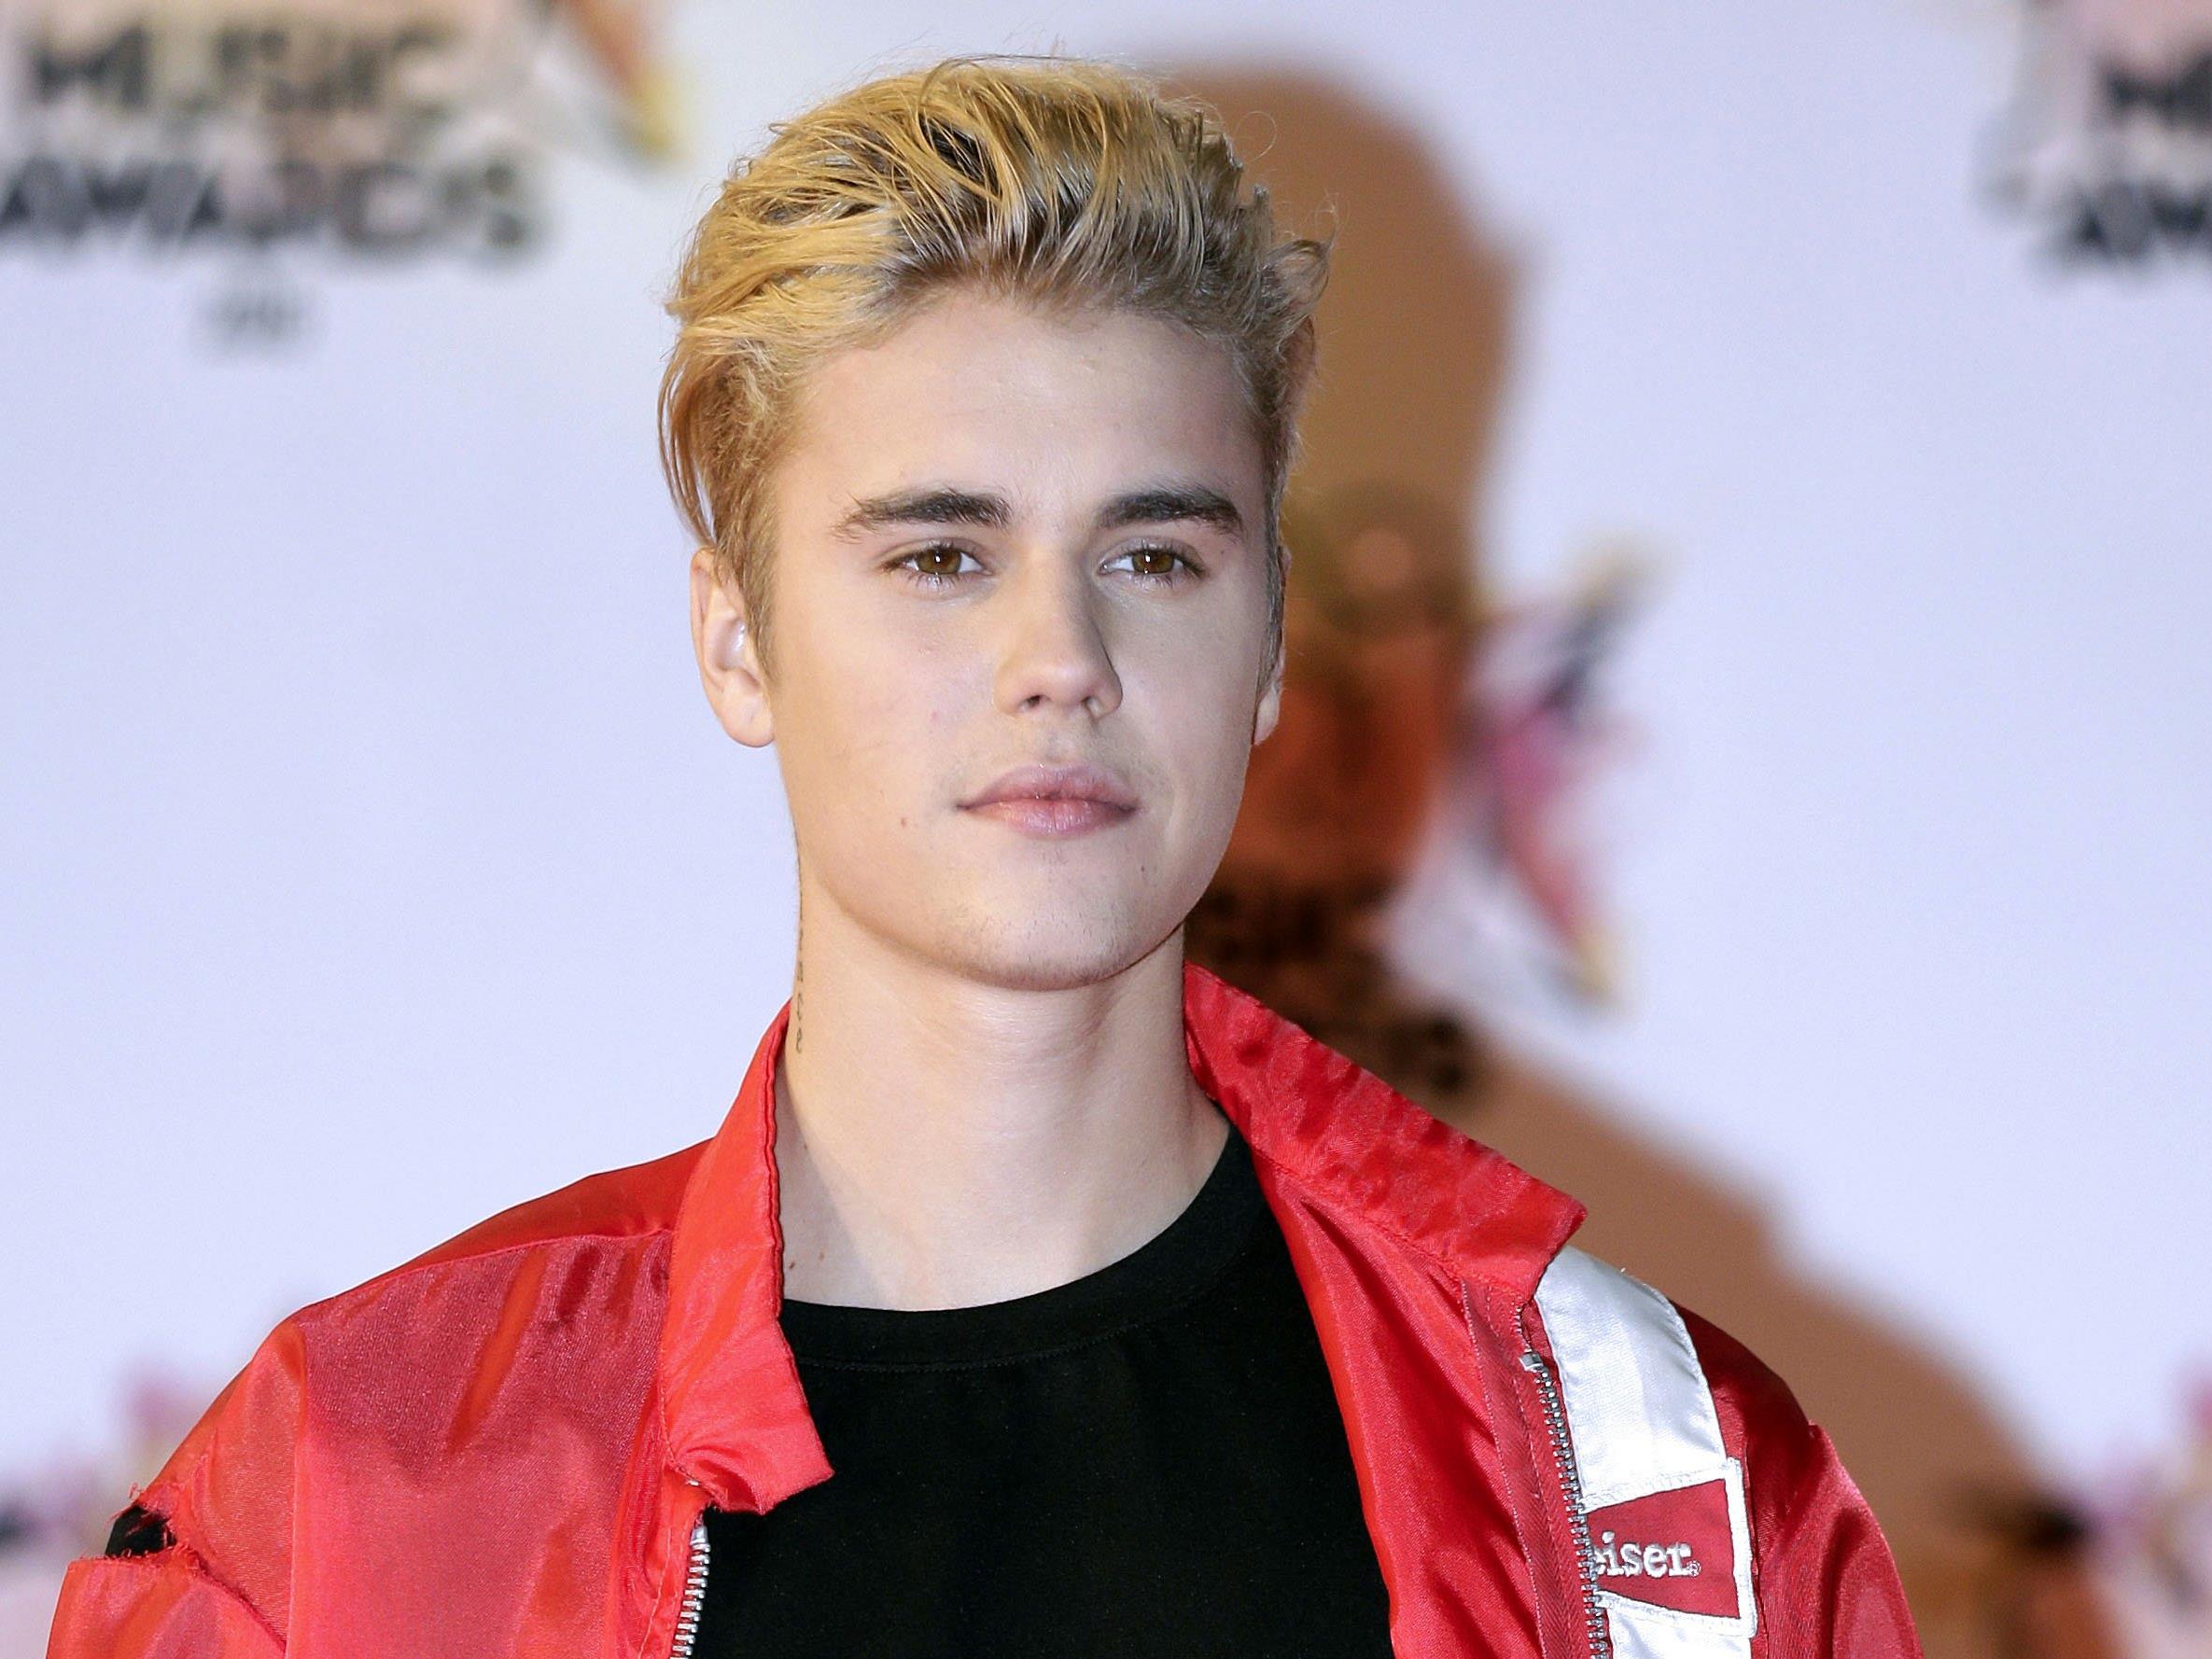 Junger Mann trug von Bieber-Schlag blutige Lippe davon - Polizei: Noch keine Anzeige